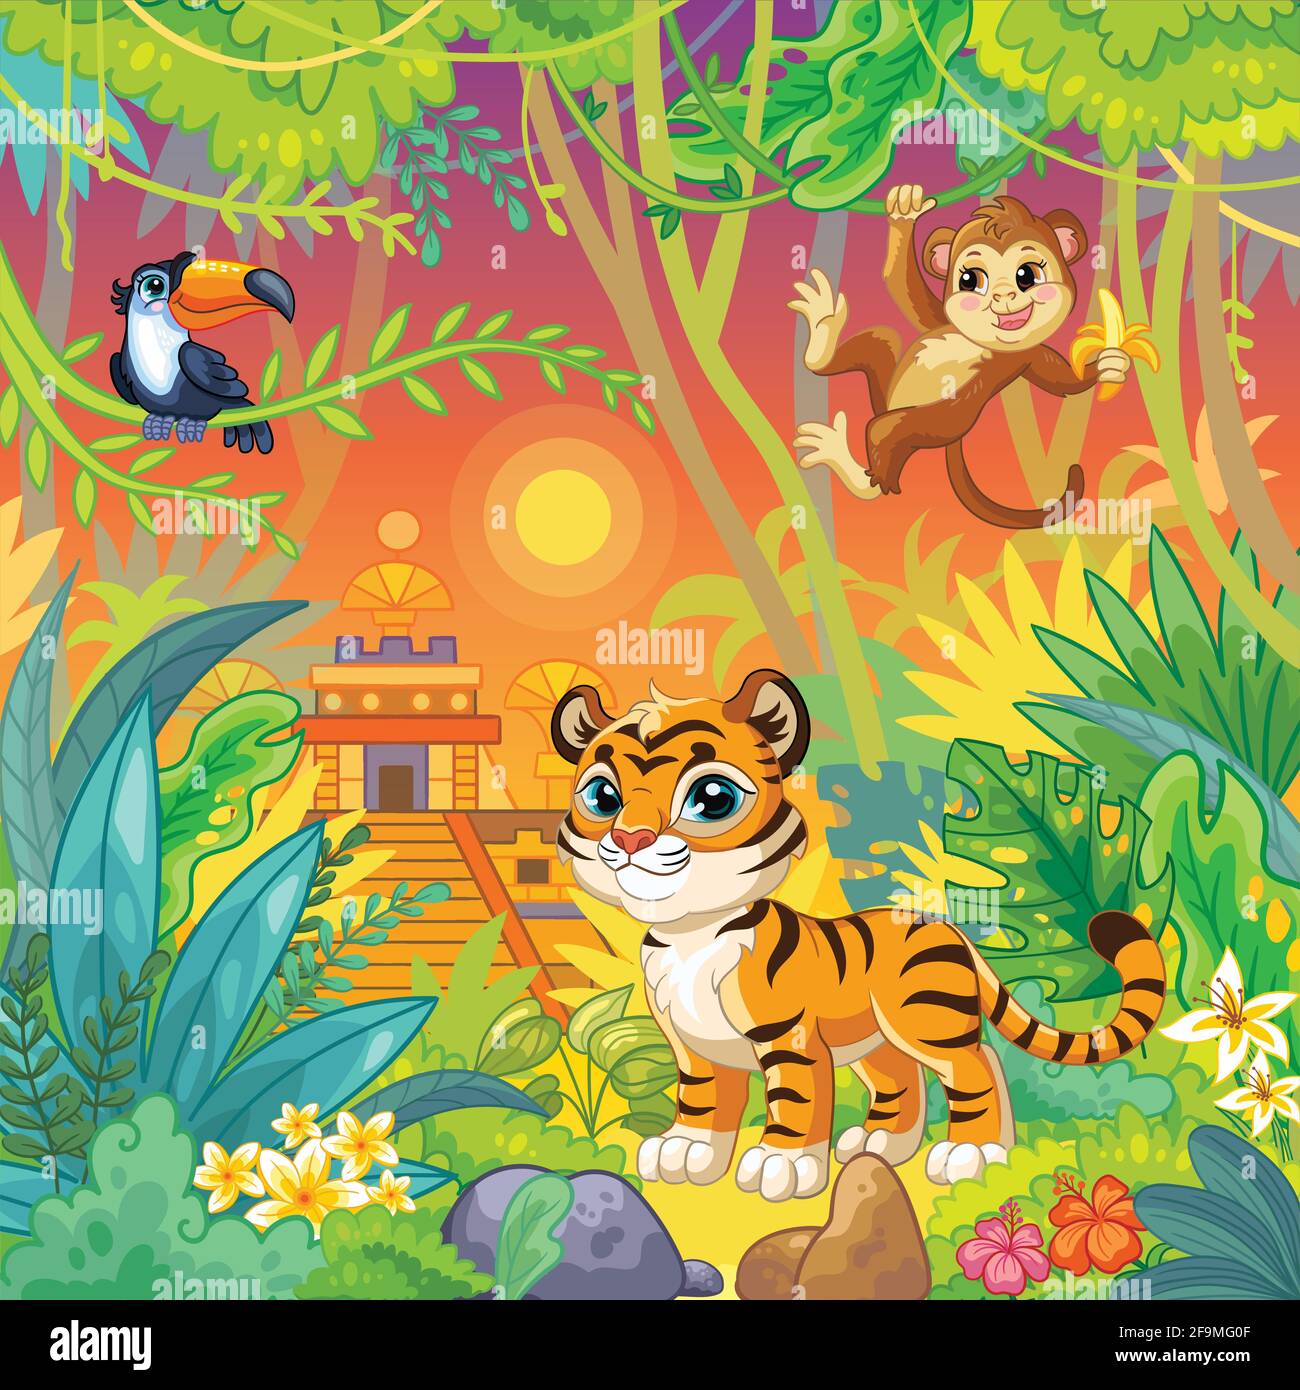 Dschungel Cartoon Hintergrund mit niedlichen wilden Tieren Tukan, Affe und Tiger. Vektorgrafik. Für Print, Design, Poster, Karten, Aufkleber, puzzle, d Stock Vektor